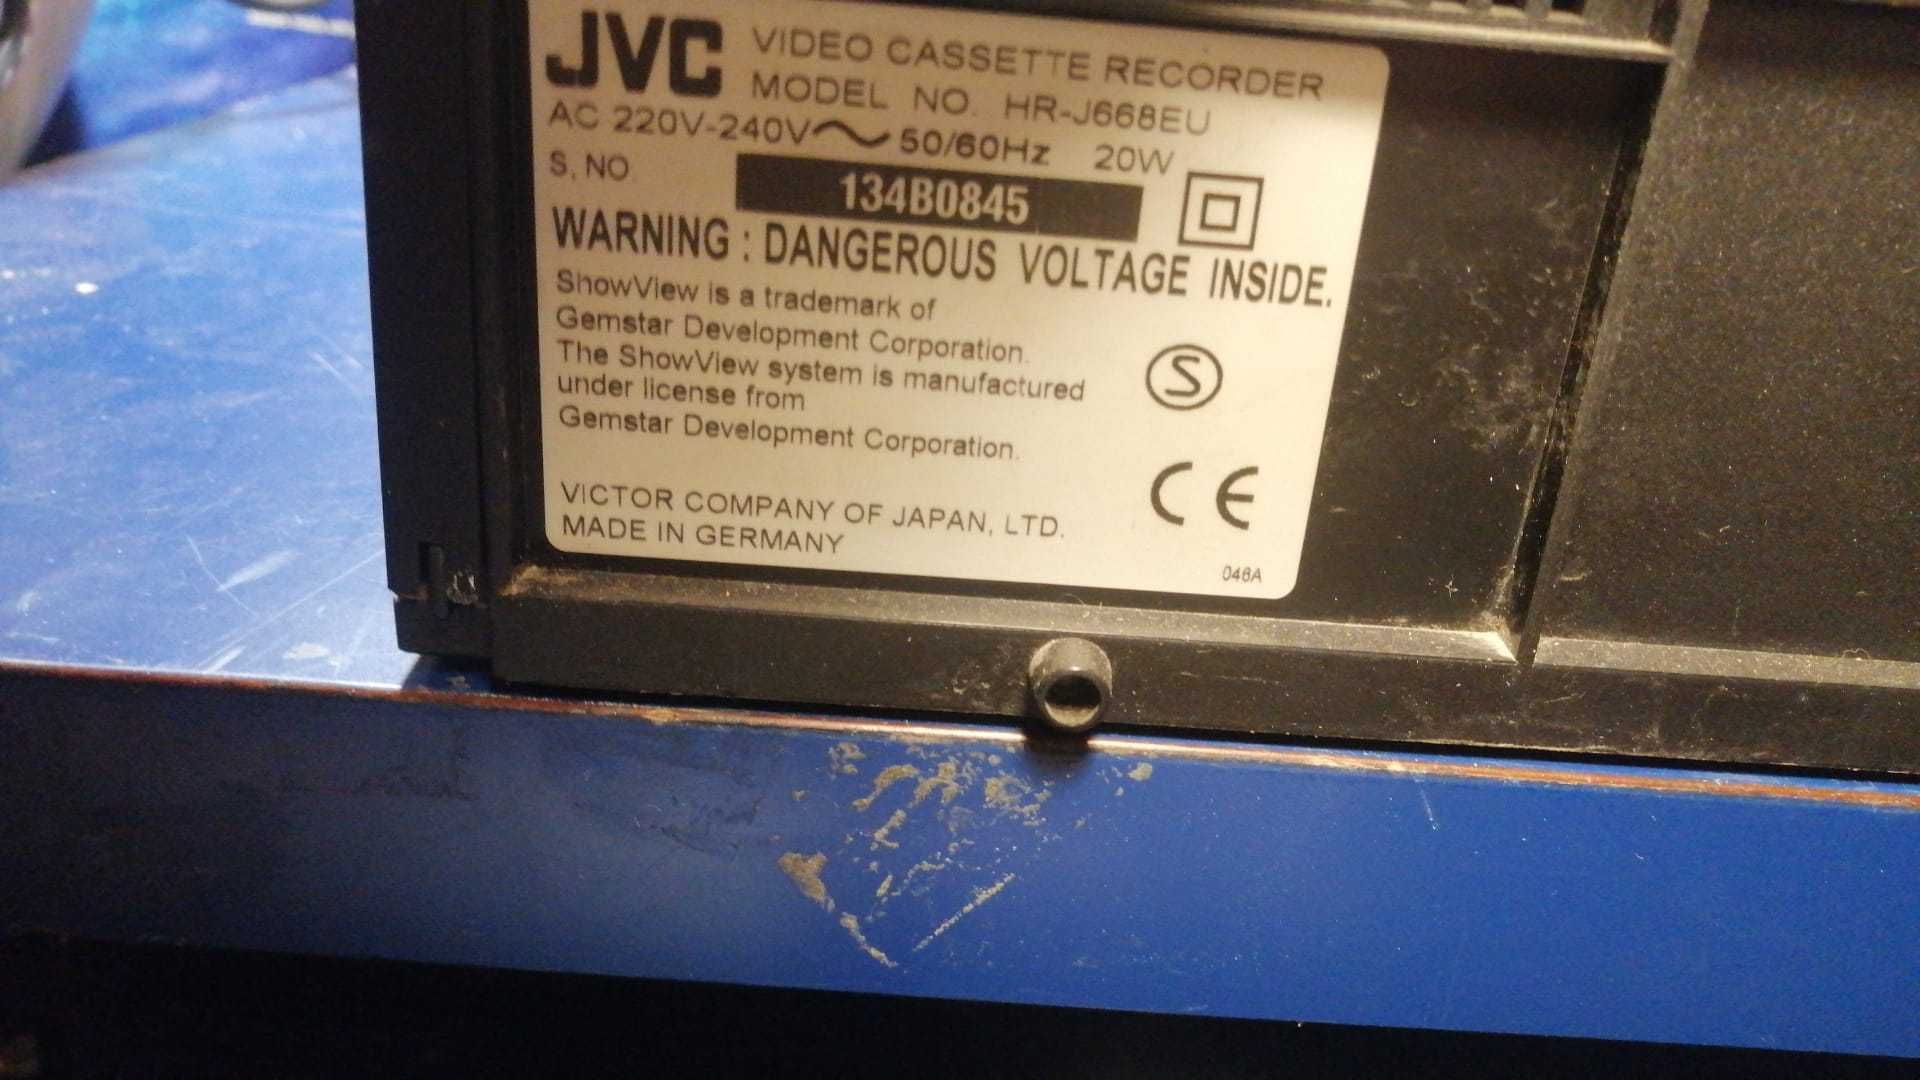 Jvc HR-j668EU video cassette recorder